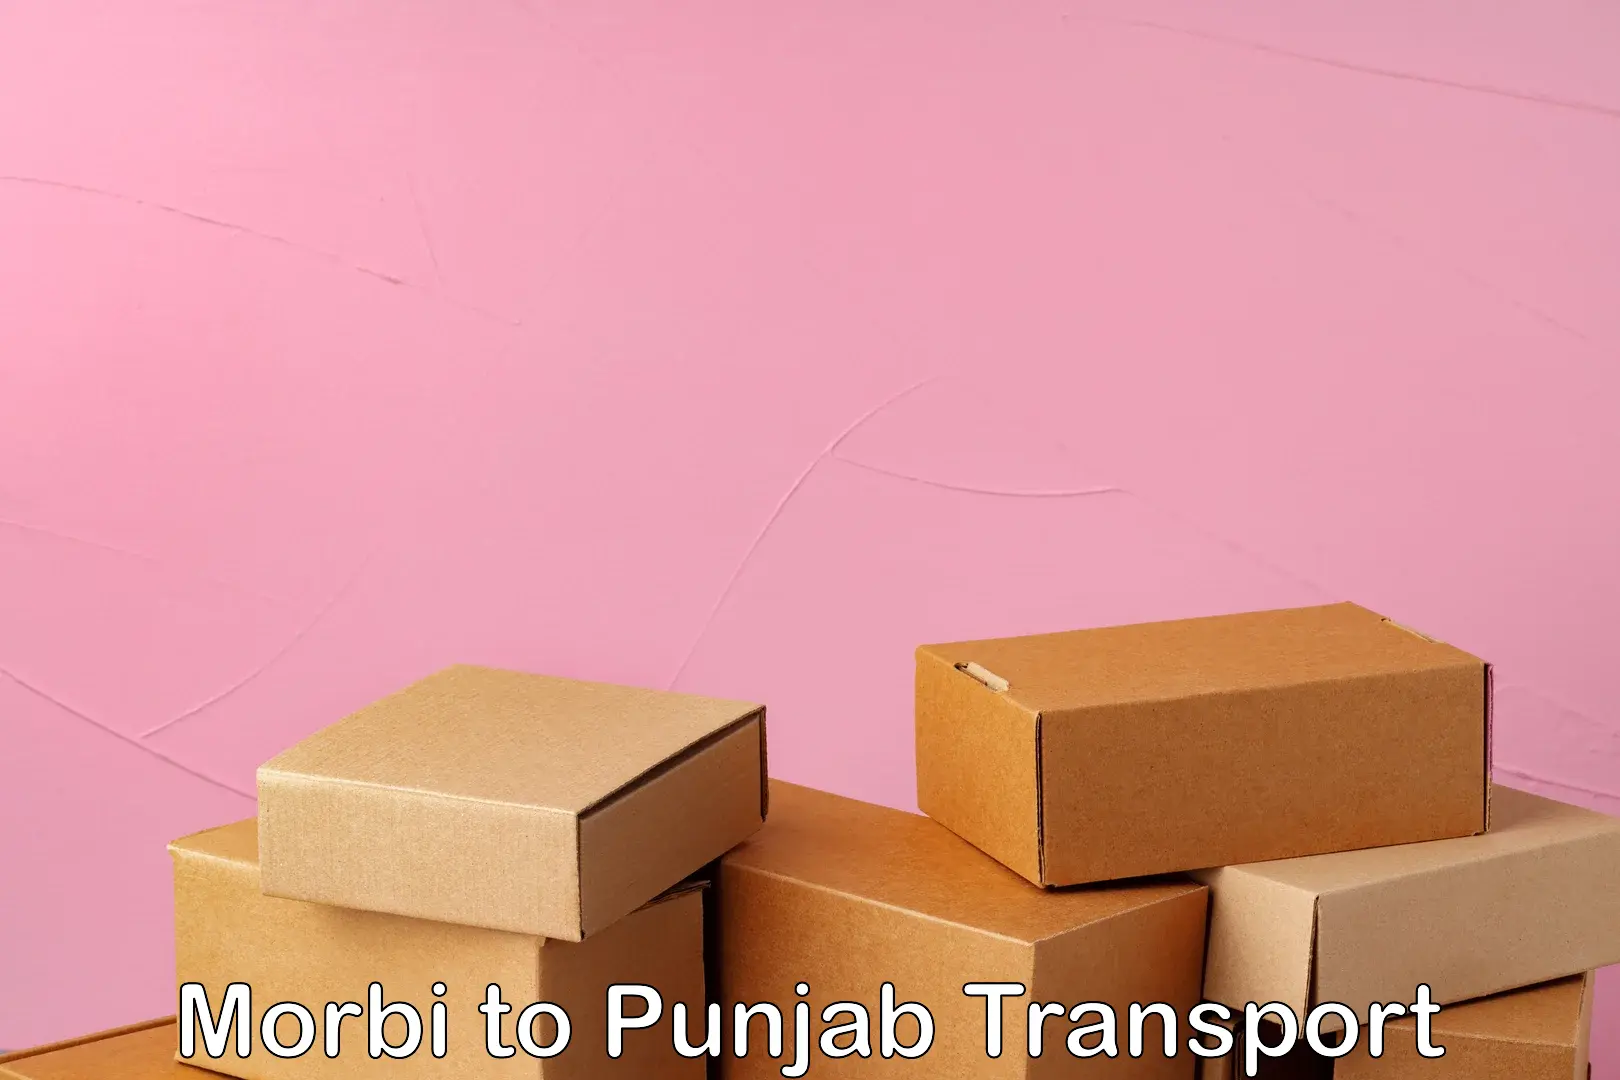 Transport services Morbi to Punjab